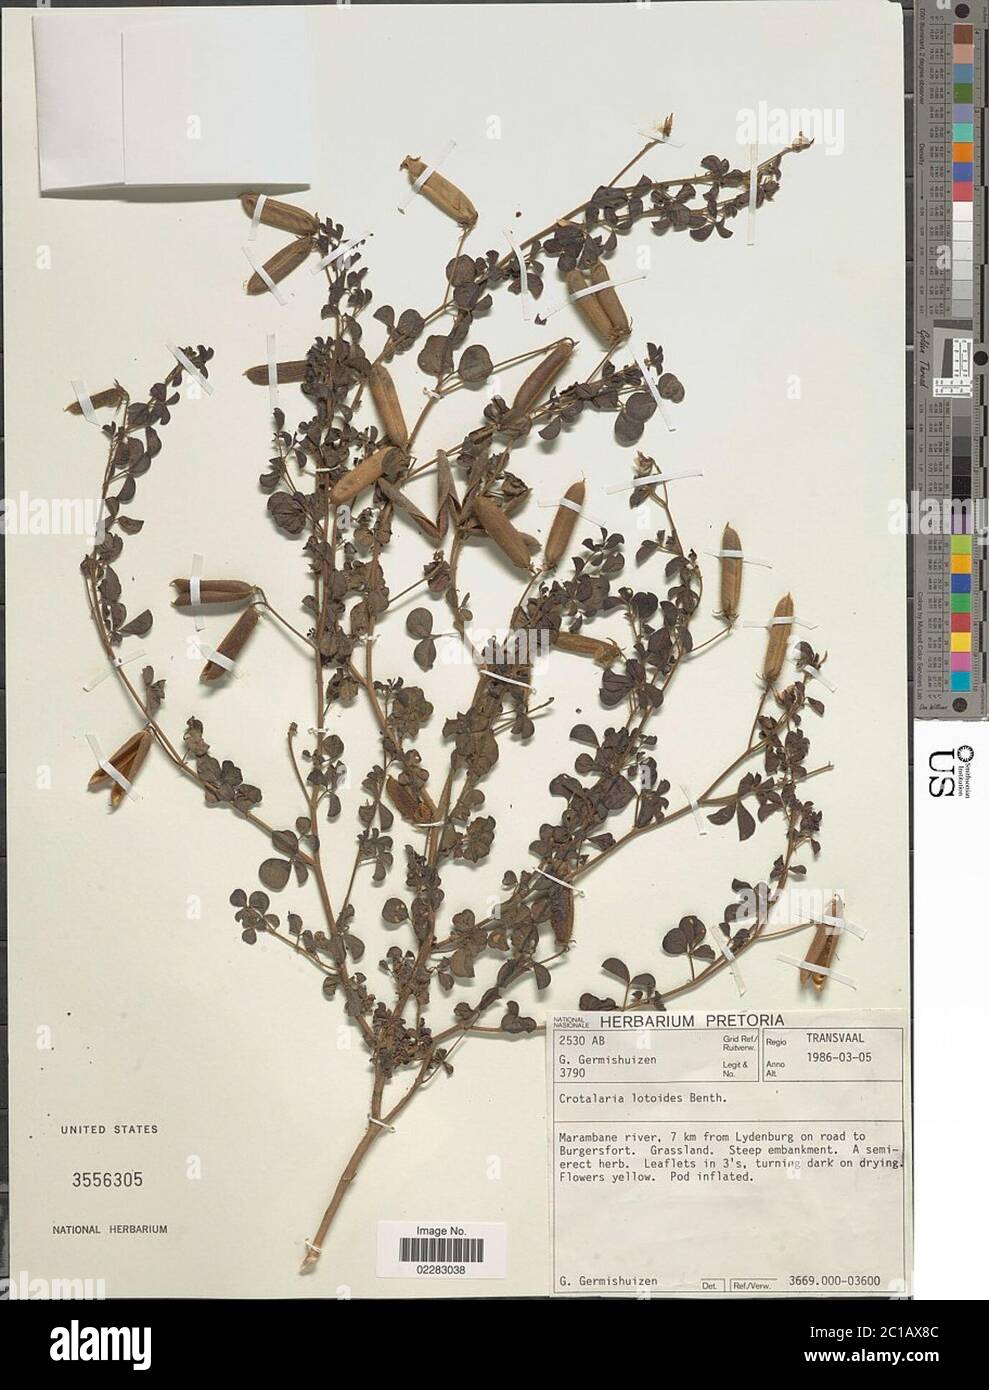 Crotalaria lotoides Benth Crotalaria lotoides Benth. Stock Photo